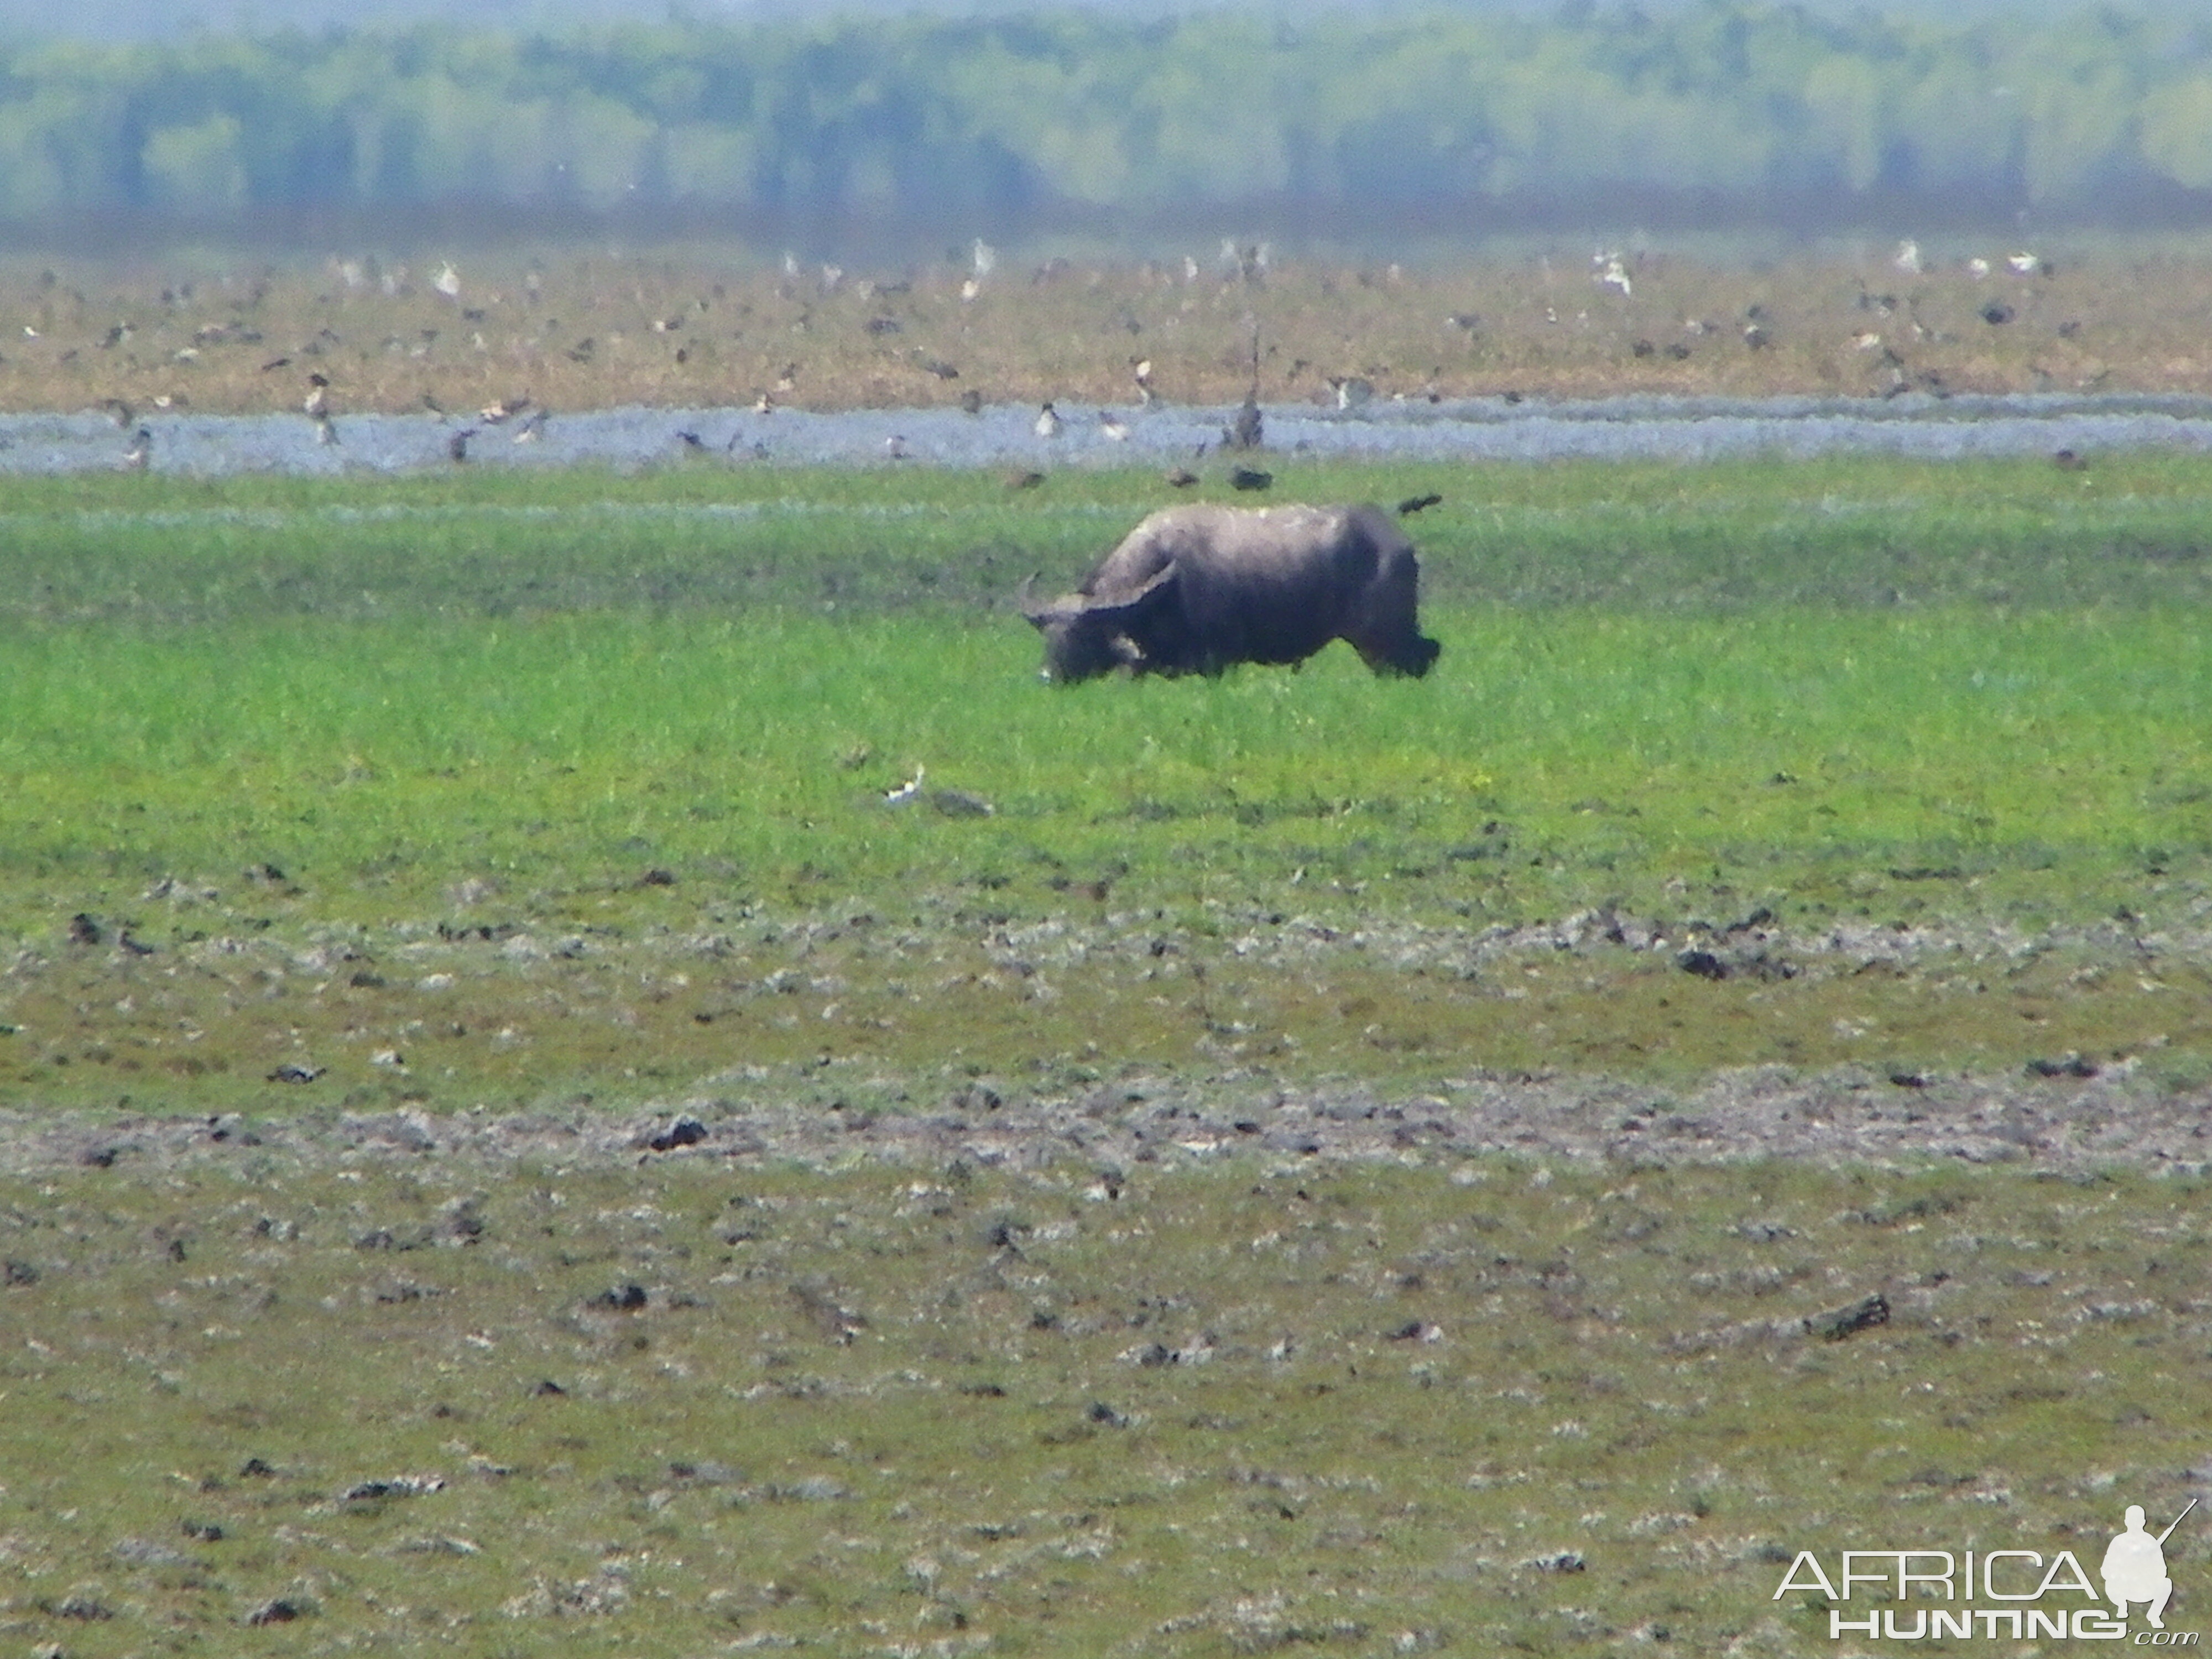 Asiatic Water Buffalo